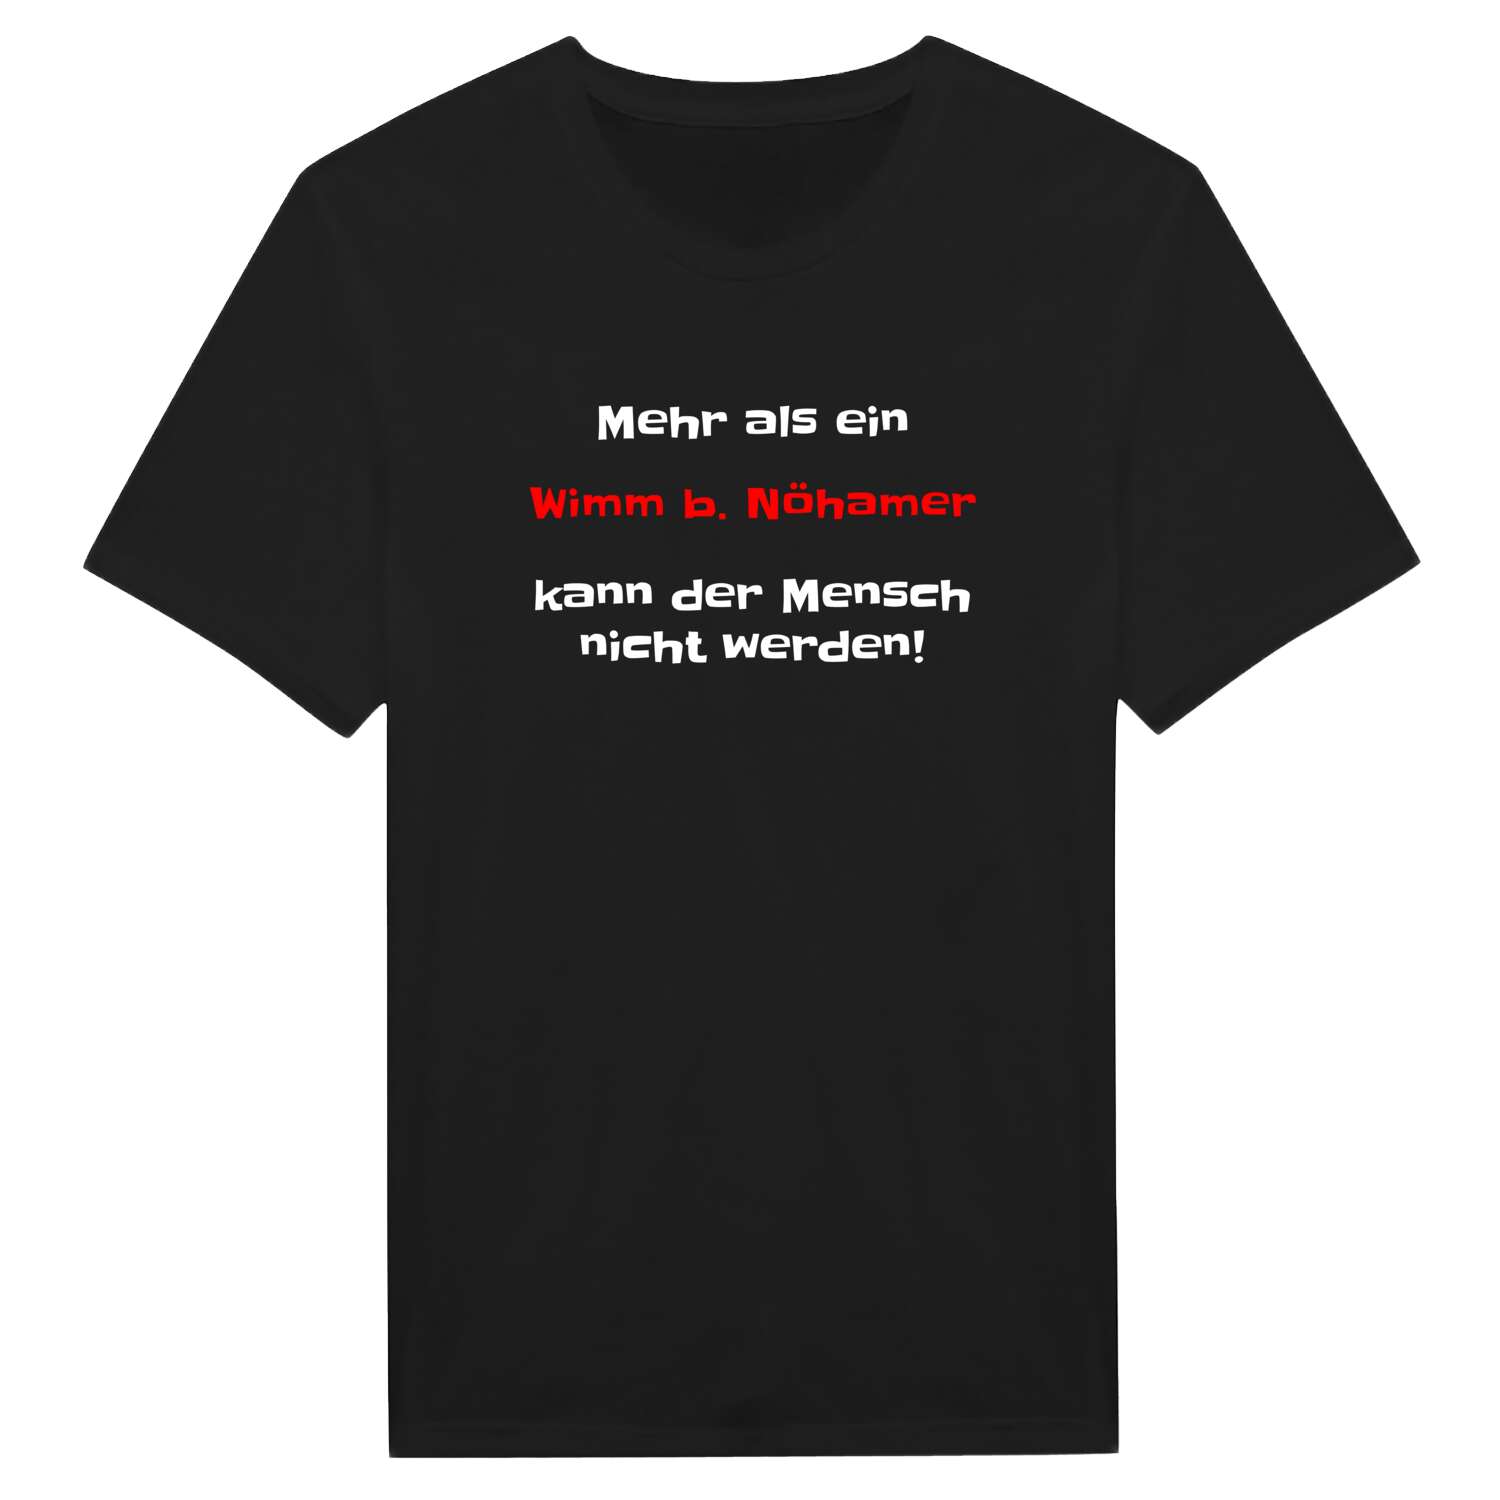 Wimm b. Nöham T-Shirt »Mehr als ein«